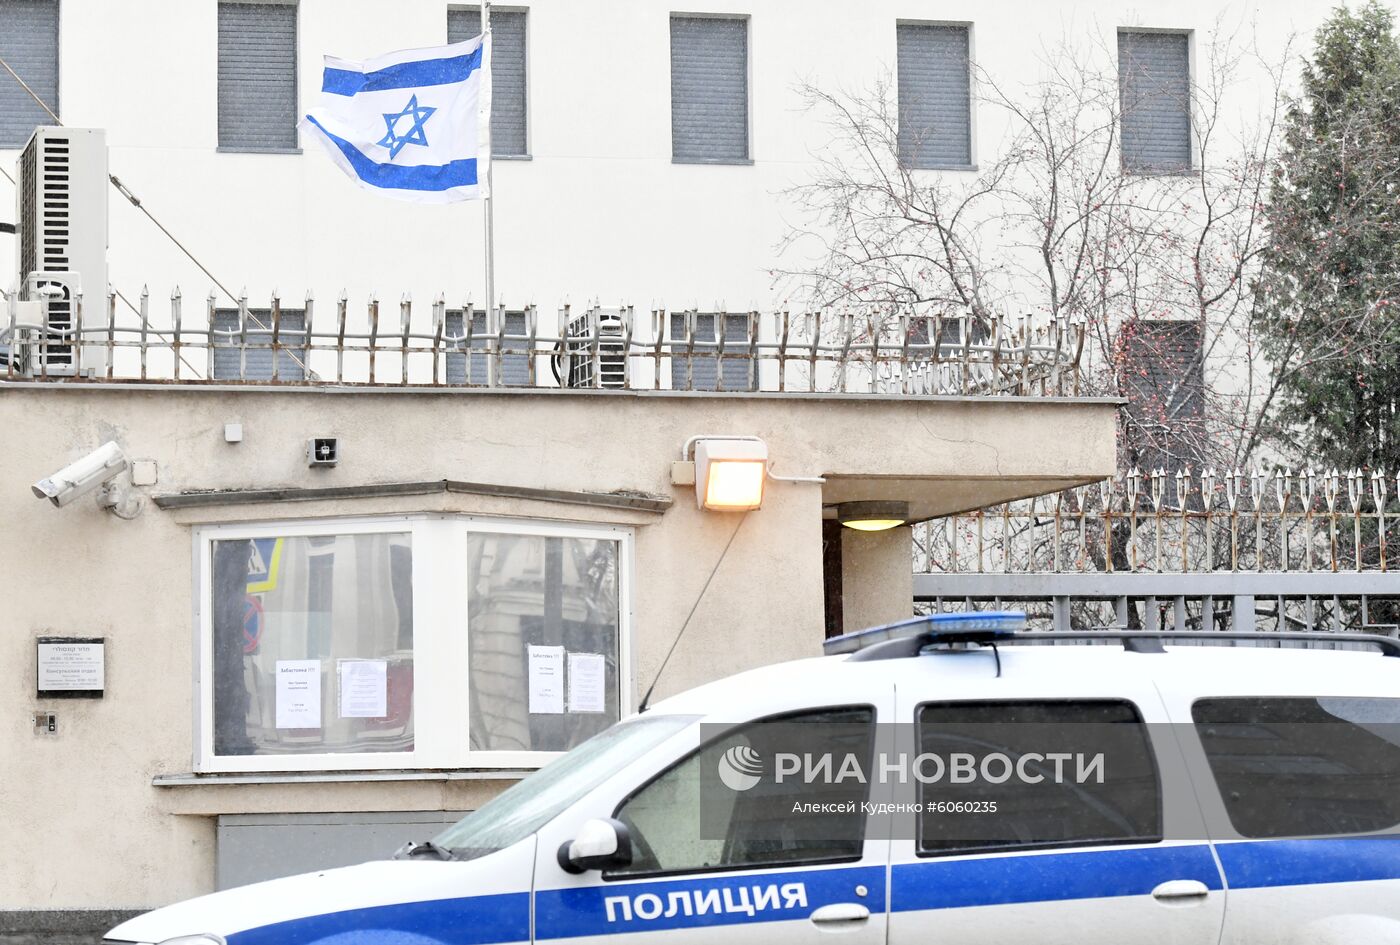 Посольство Израиля в России приостановило работу